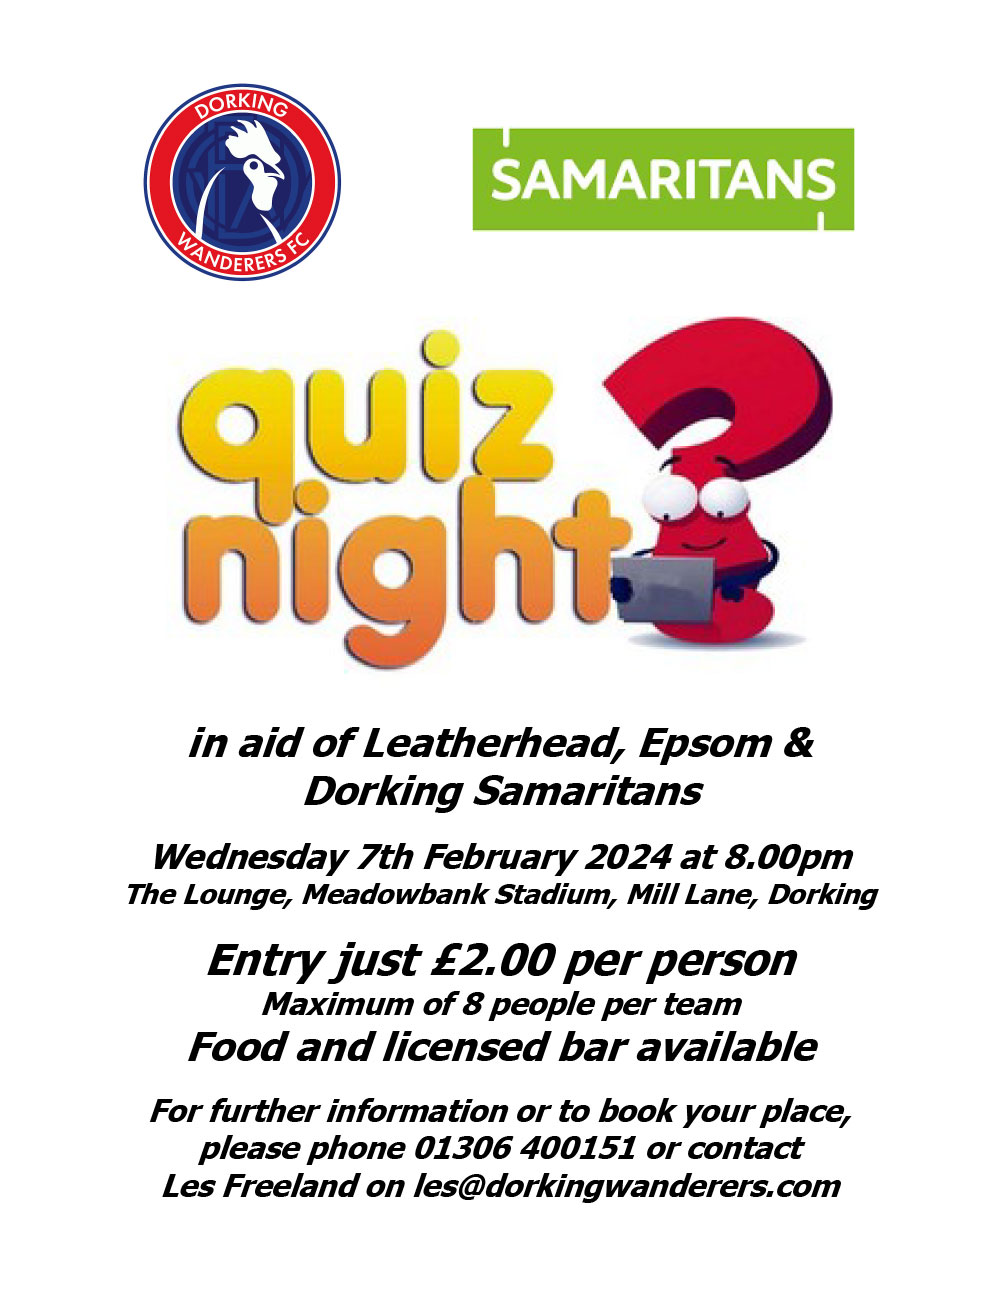 Full event Flyer for Samatitans Quiz Night